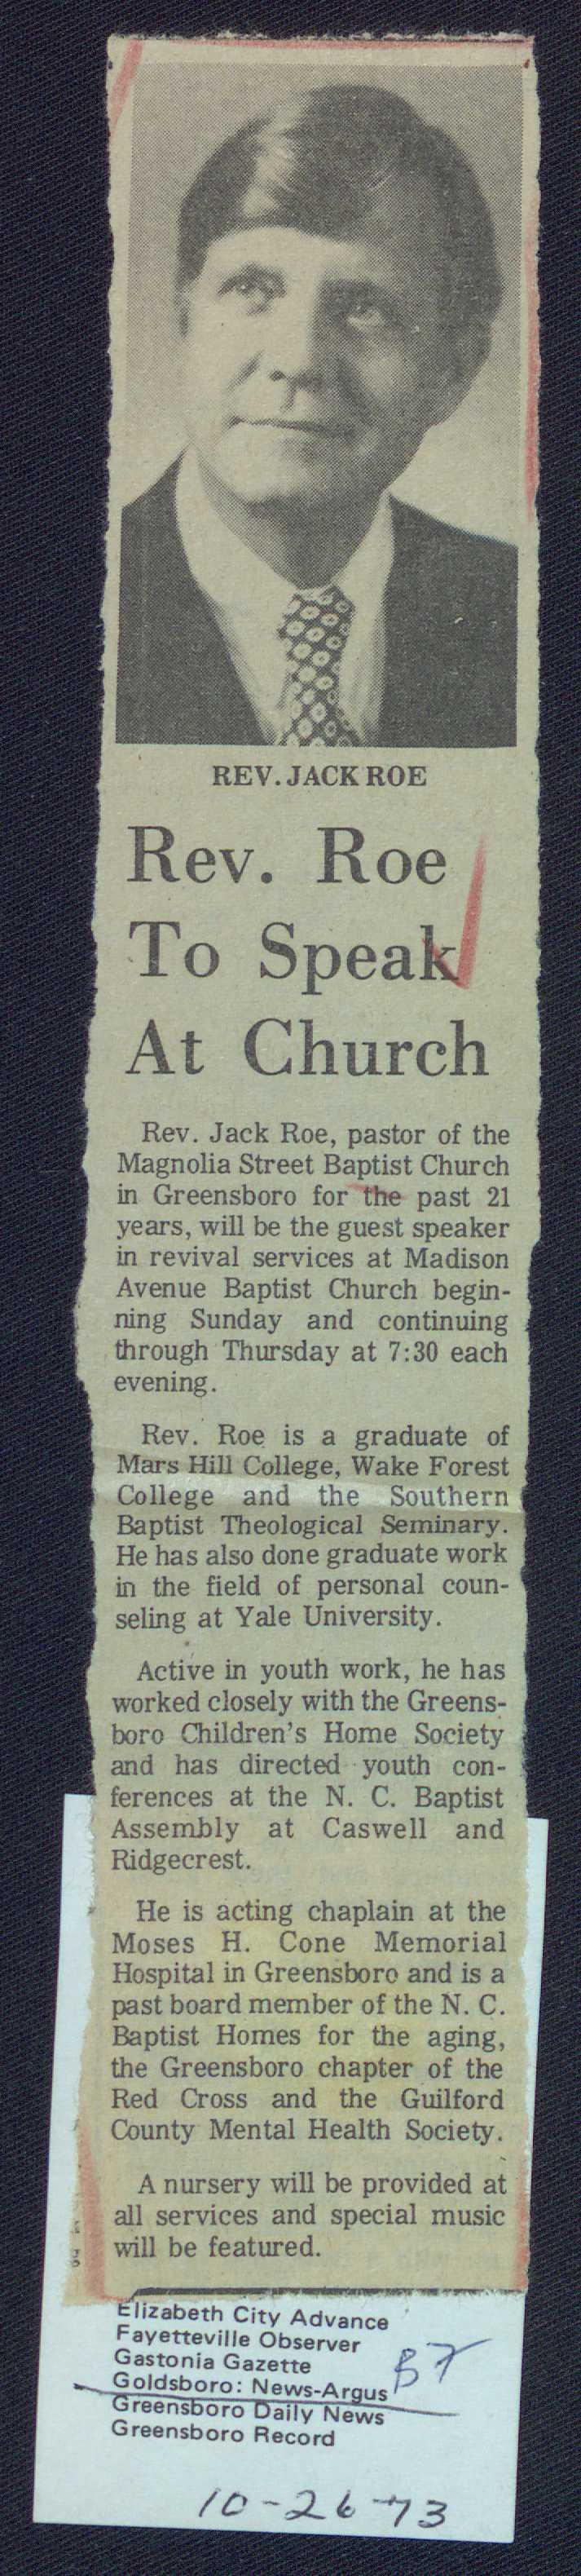 Rev. Roe To Speak At Church Rev.